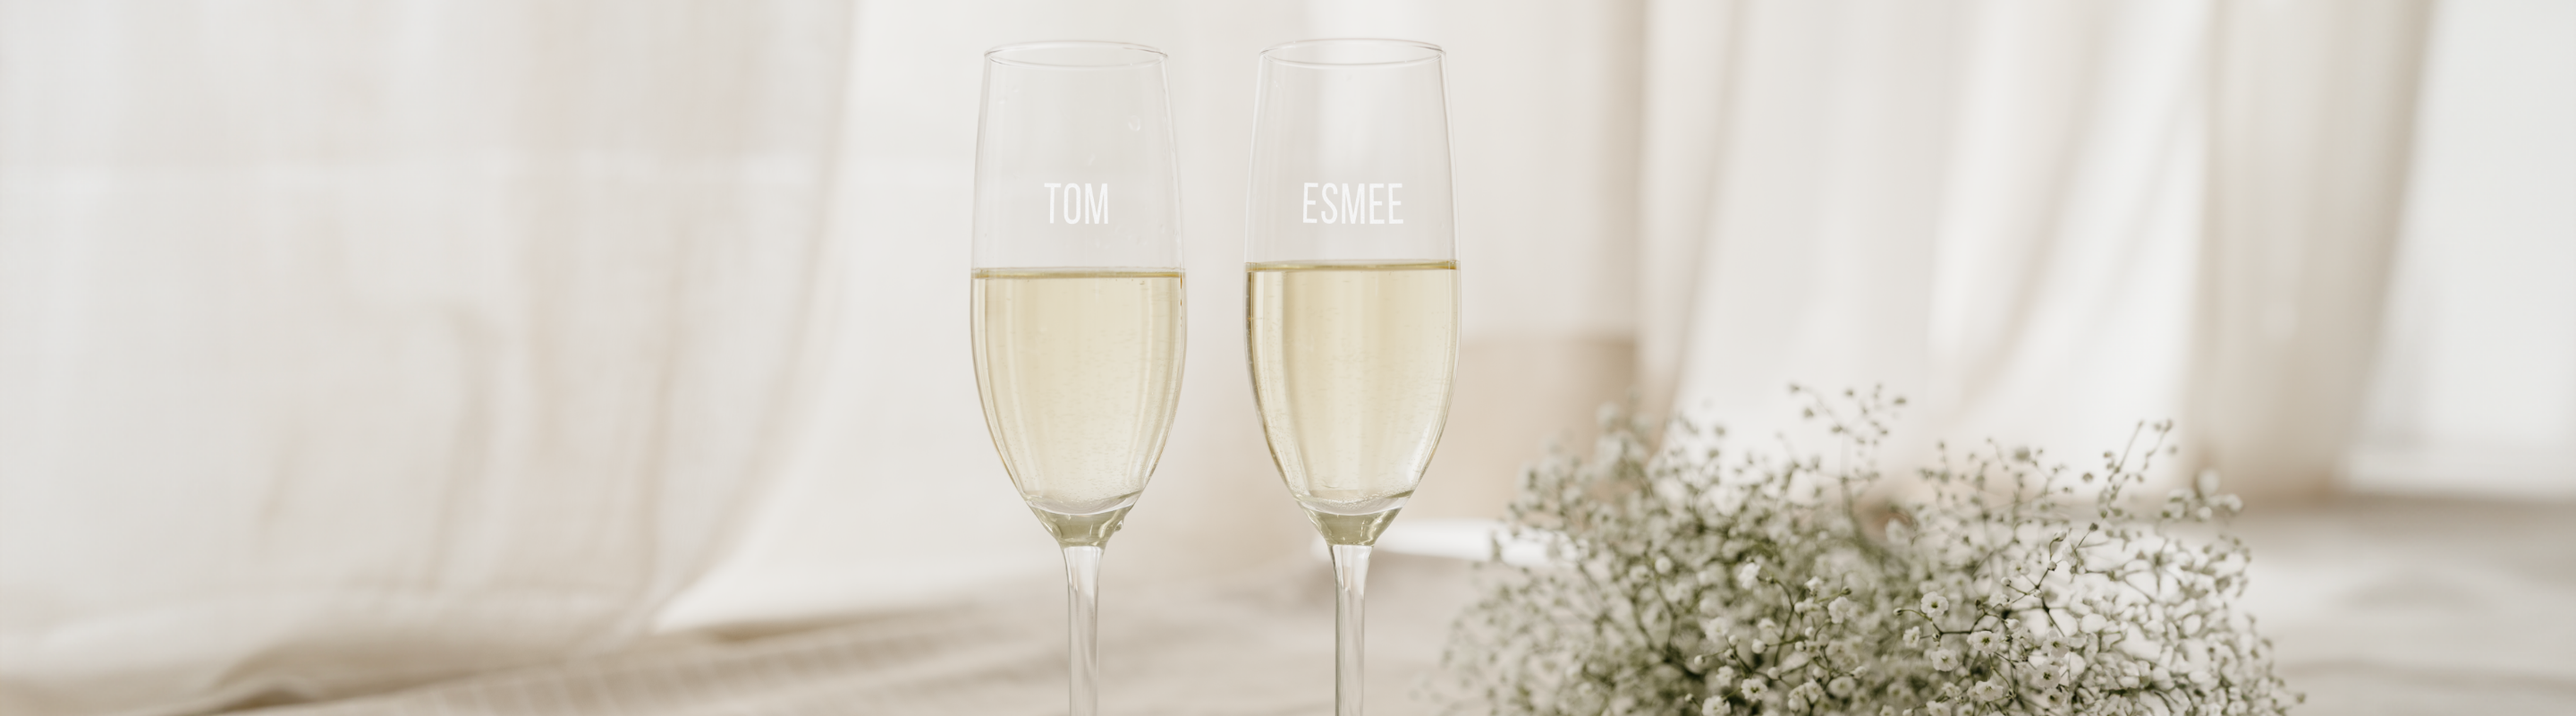 verre personnalisé avec gravure des prénoms Tom et Esmee remplis de champagne, flûtes élégantes, idéal pour célébrations et mariages.